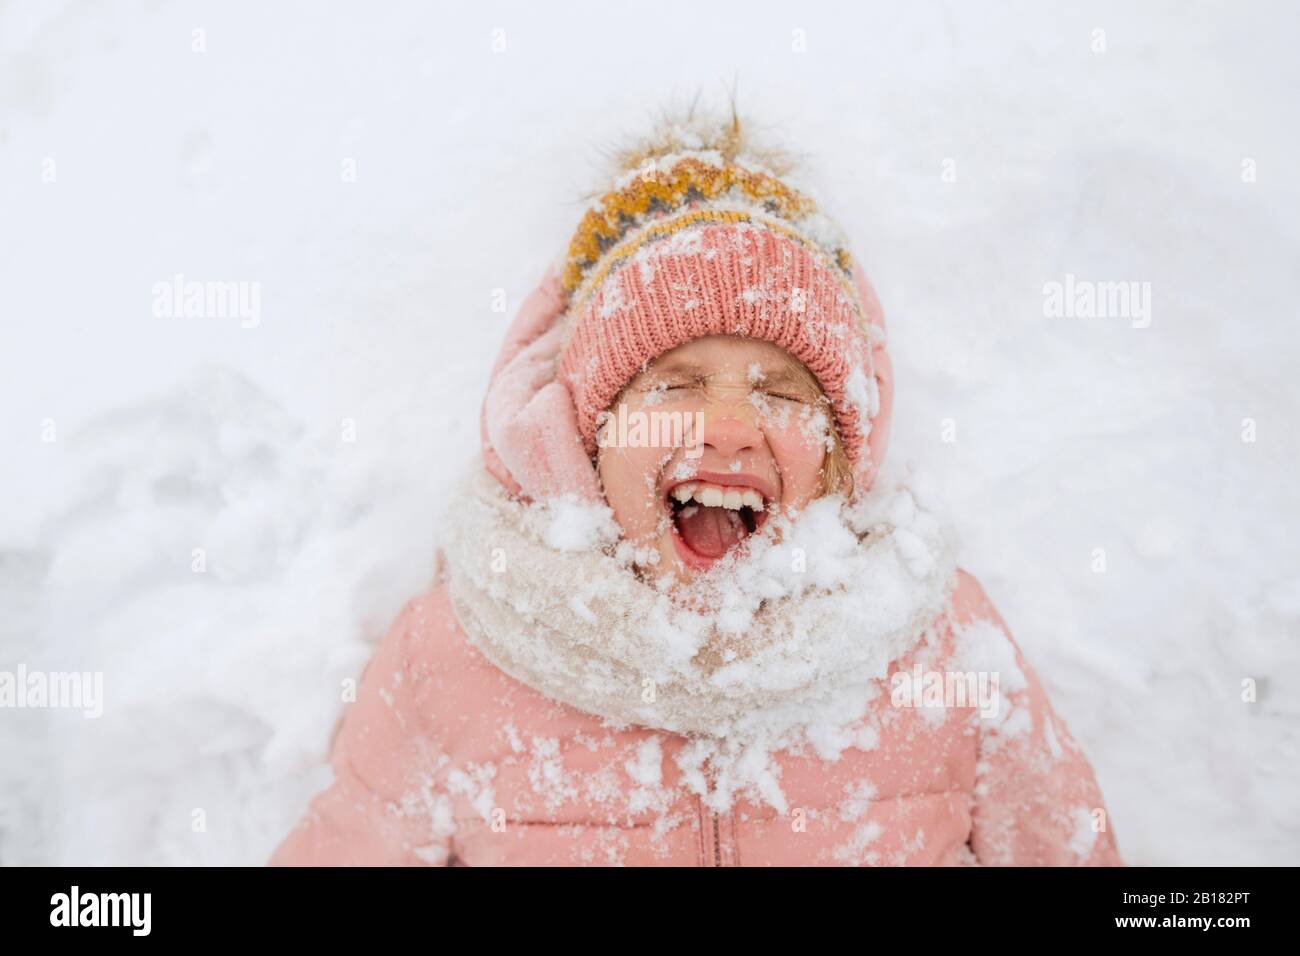 Portrait d'une fille hurlant posée sur la neige Banque D'Images